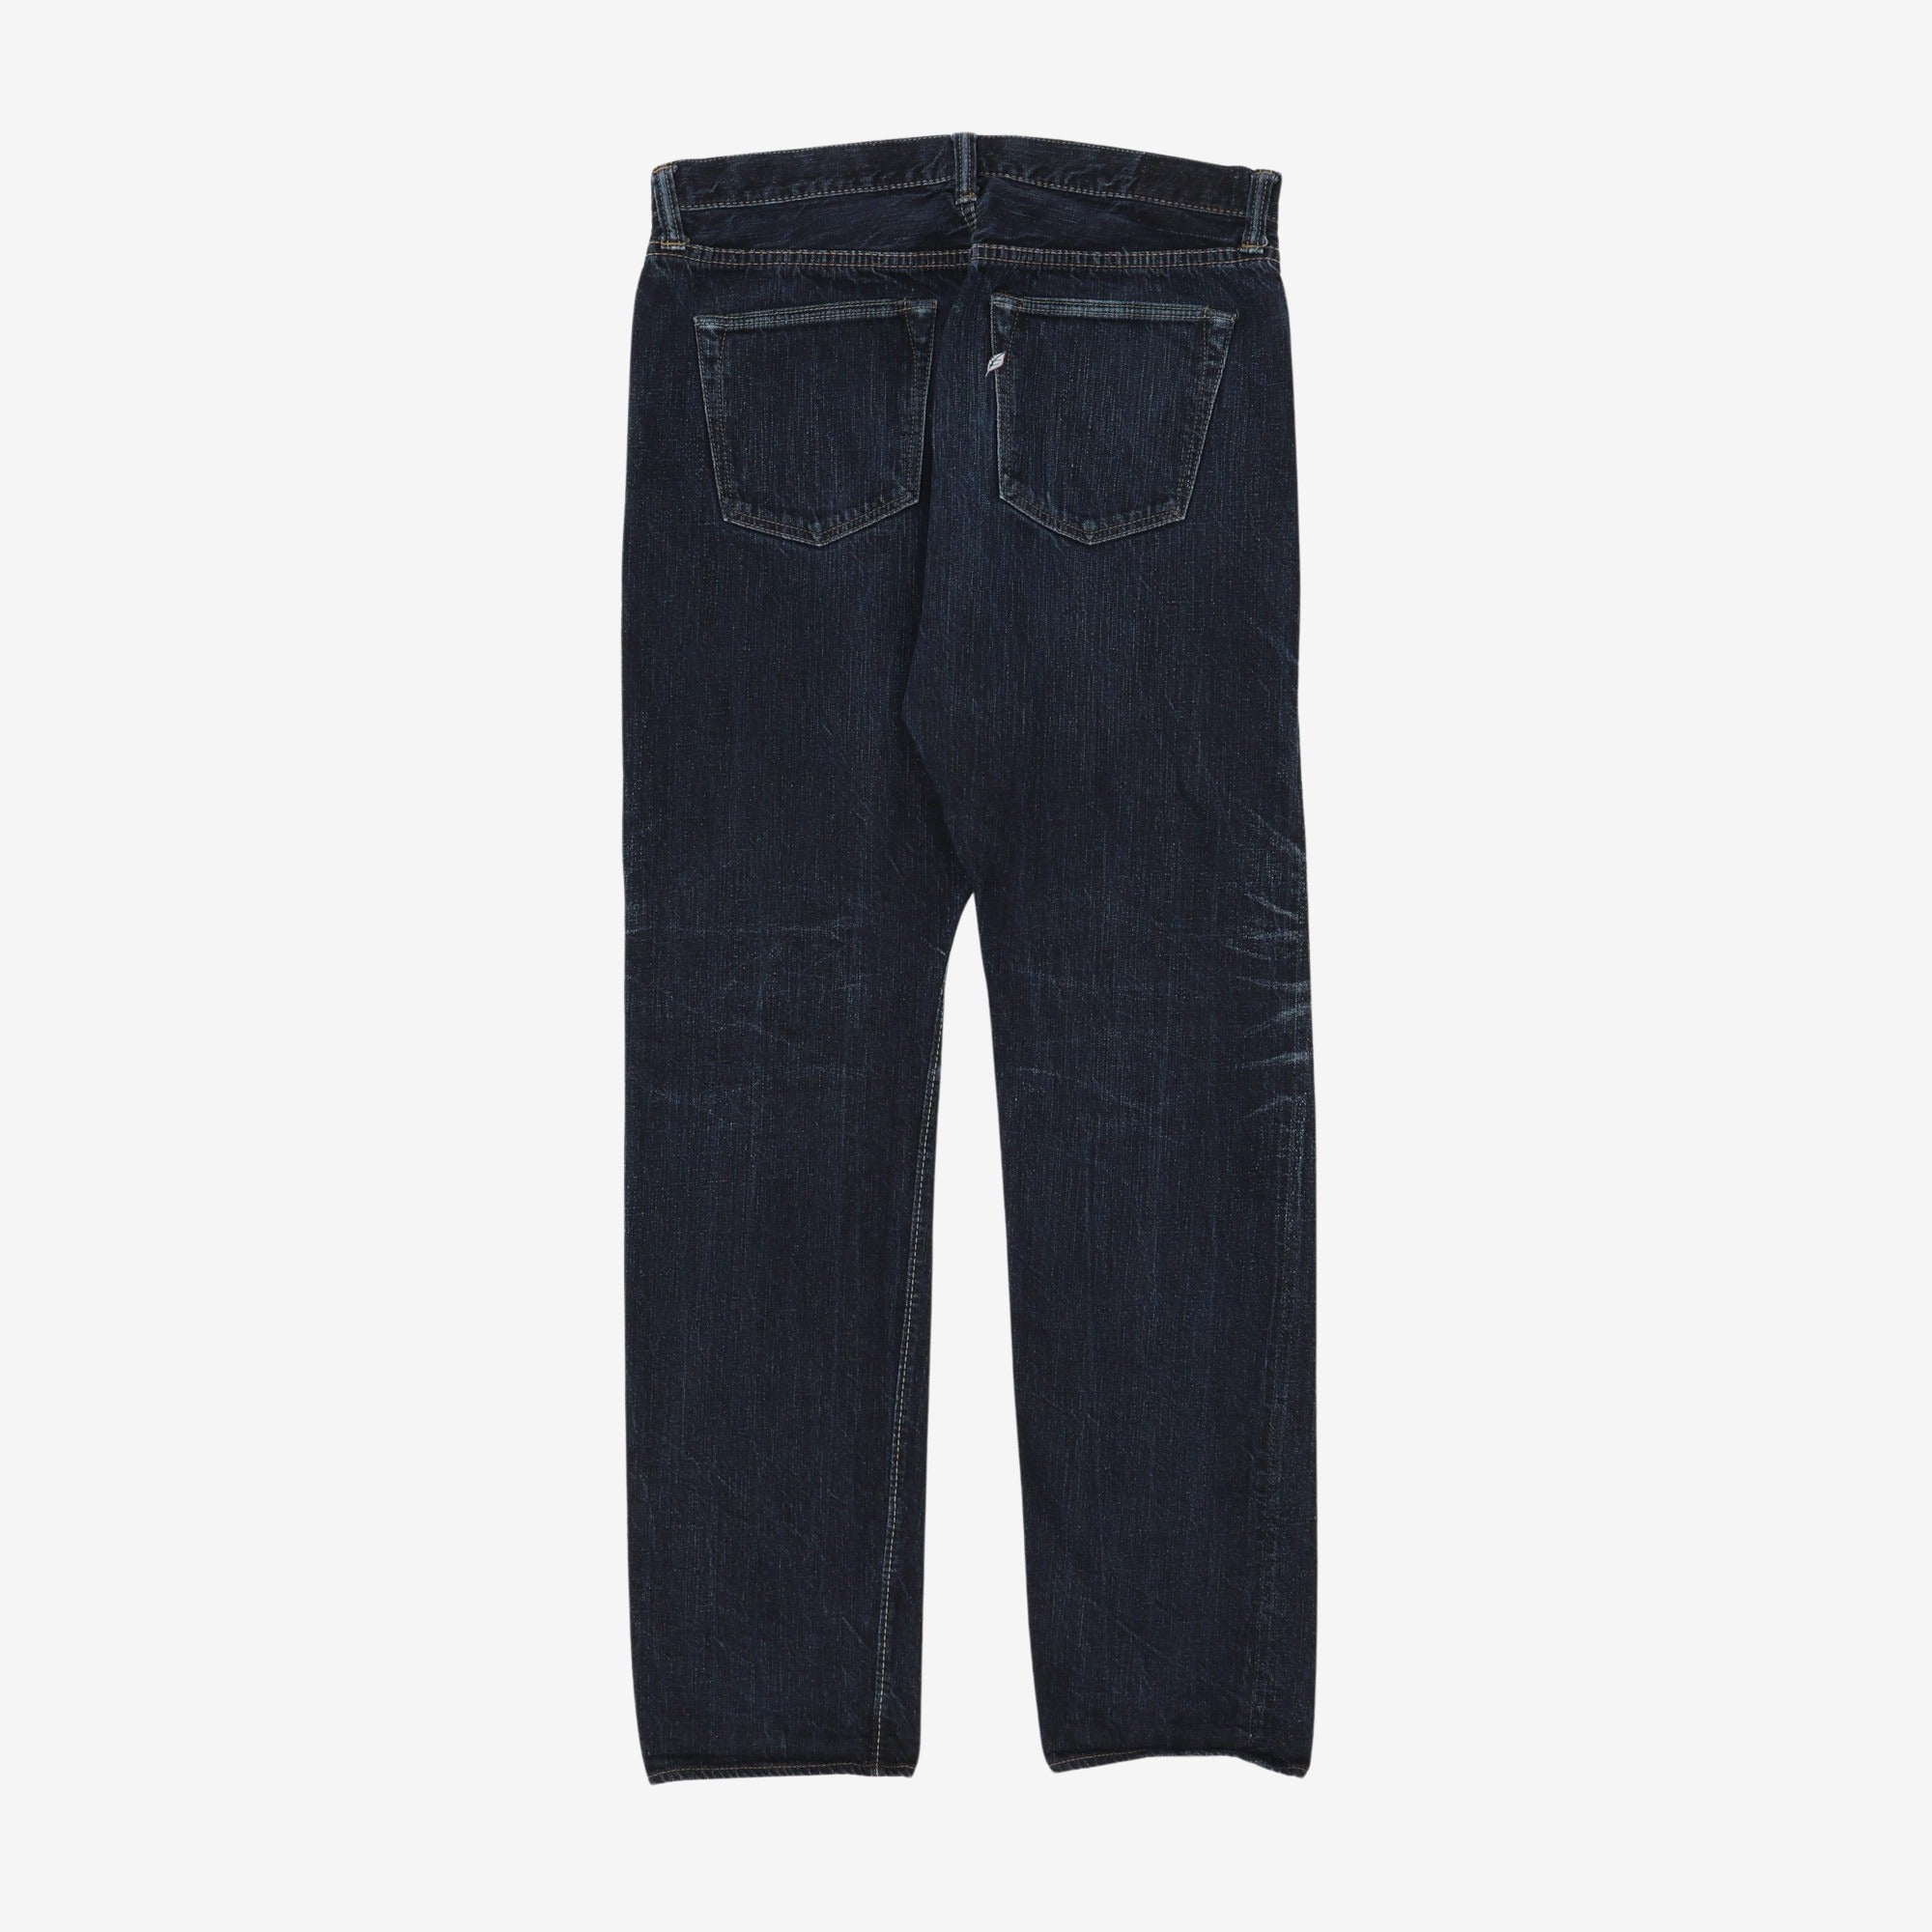 Denim Jeans (37W x 34L)